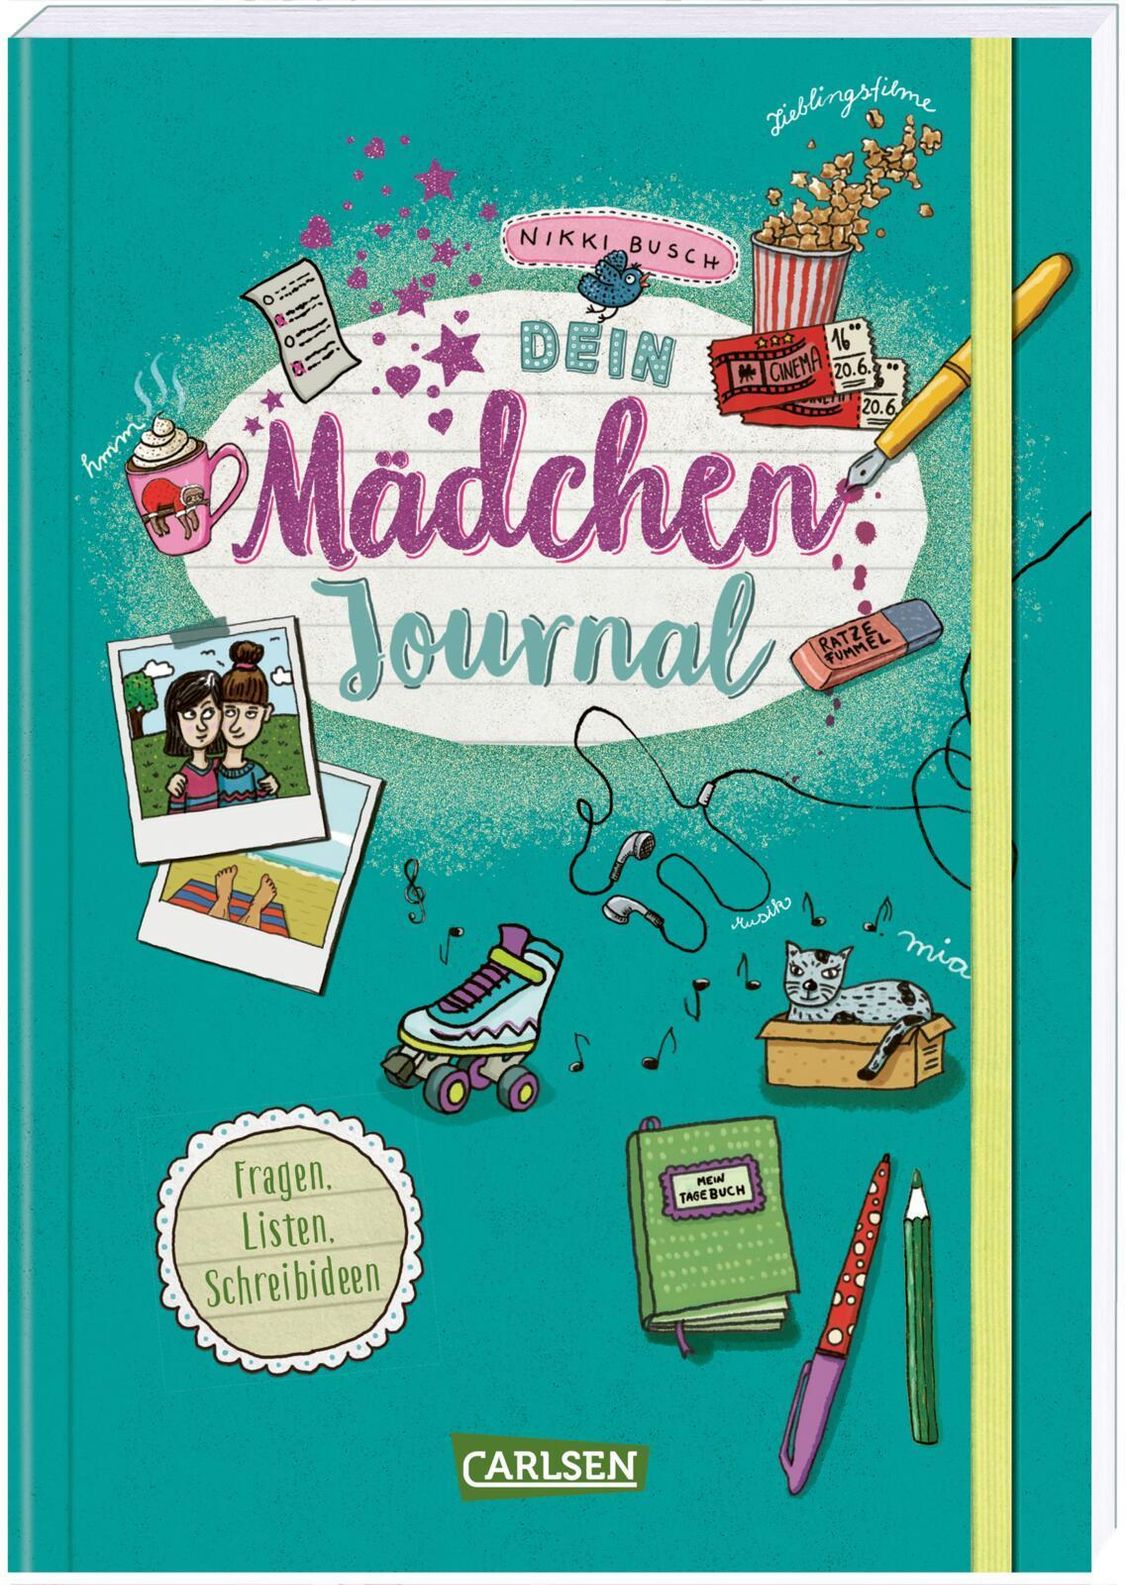 Dein Mädchen Journal Buch von Nikki Busch versandkostenfrei - Weltbild.de